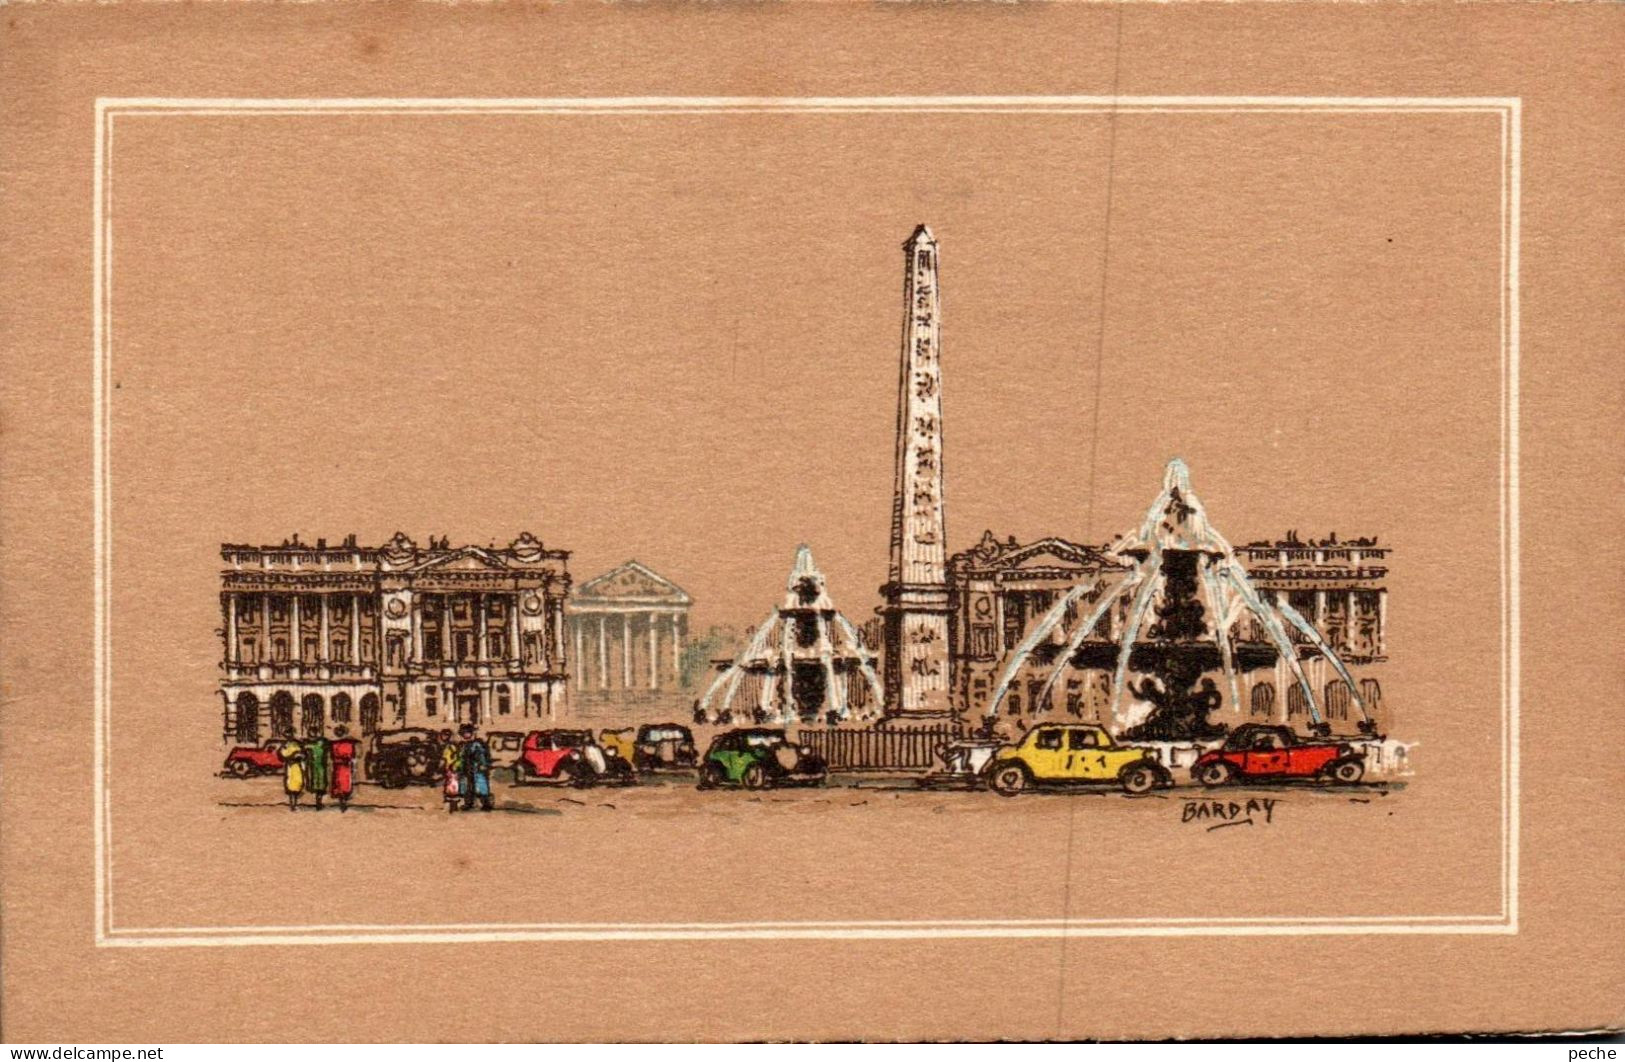 N° 2501 W -carte Double -Illustrateur Barday- Place De La Concorde- - Places, Squares